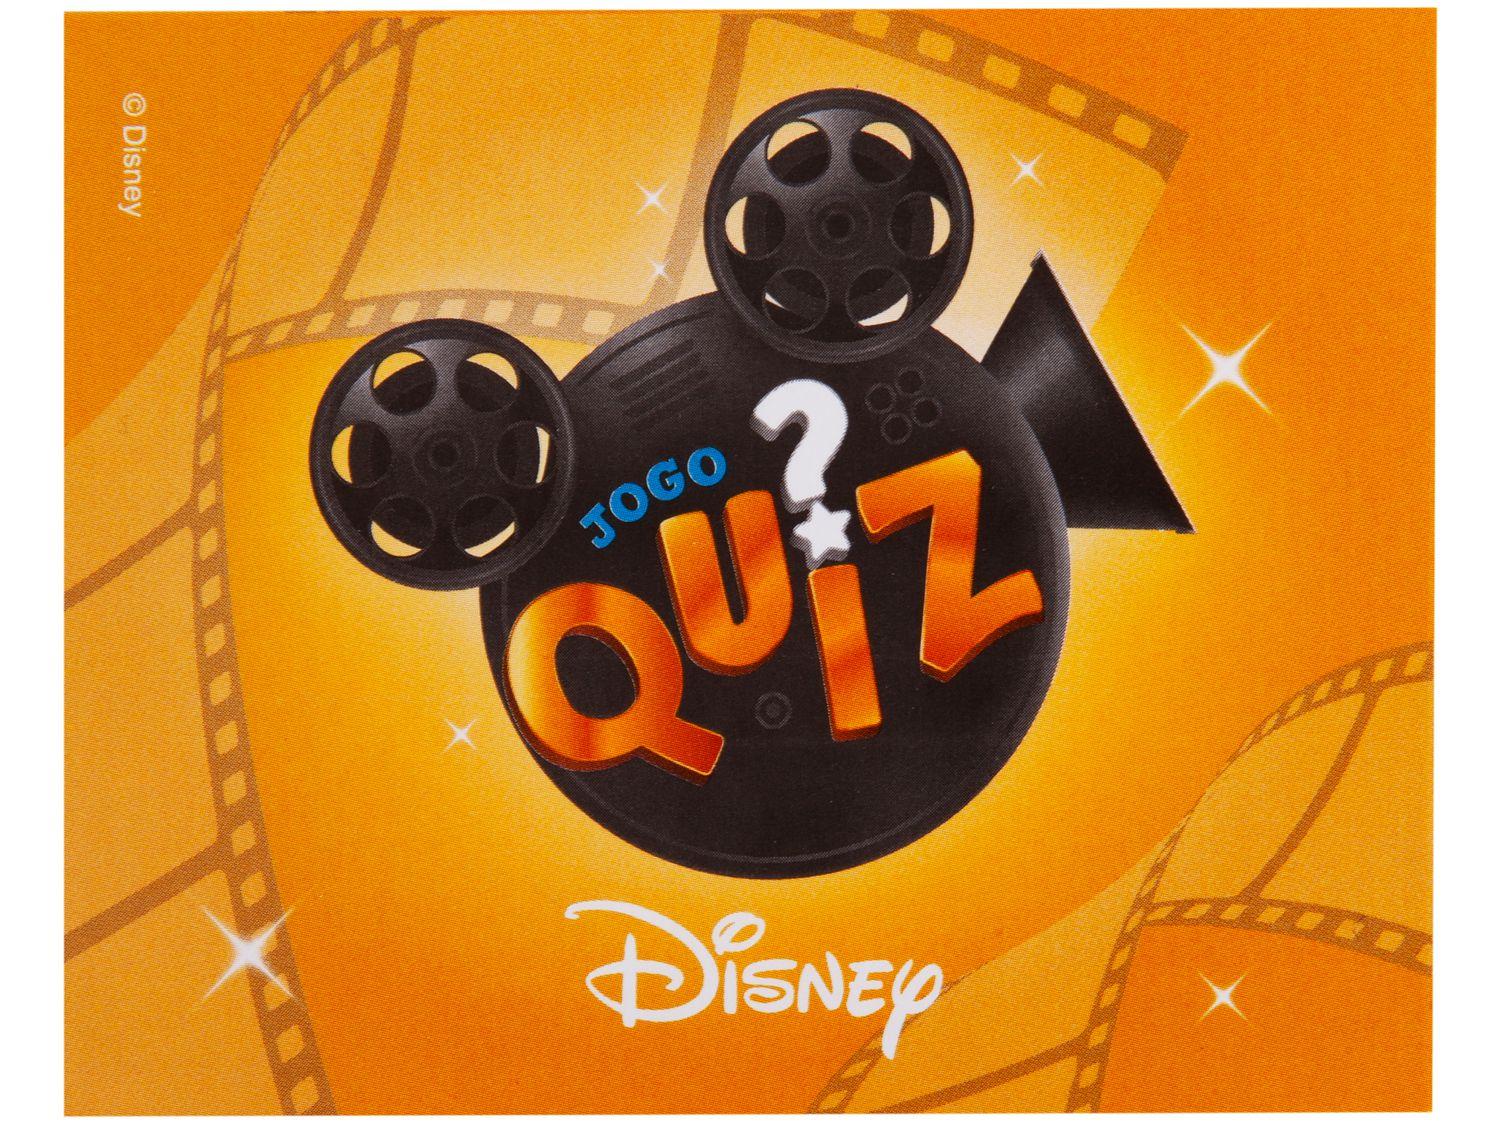 Jogo Quiz Disney - Toyster - Outros Jogos - Magazine Luiza